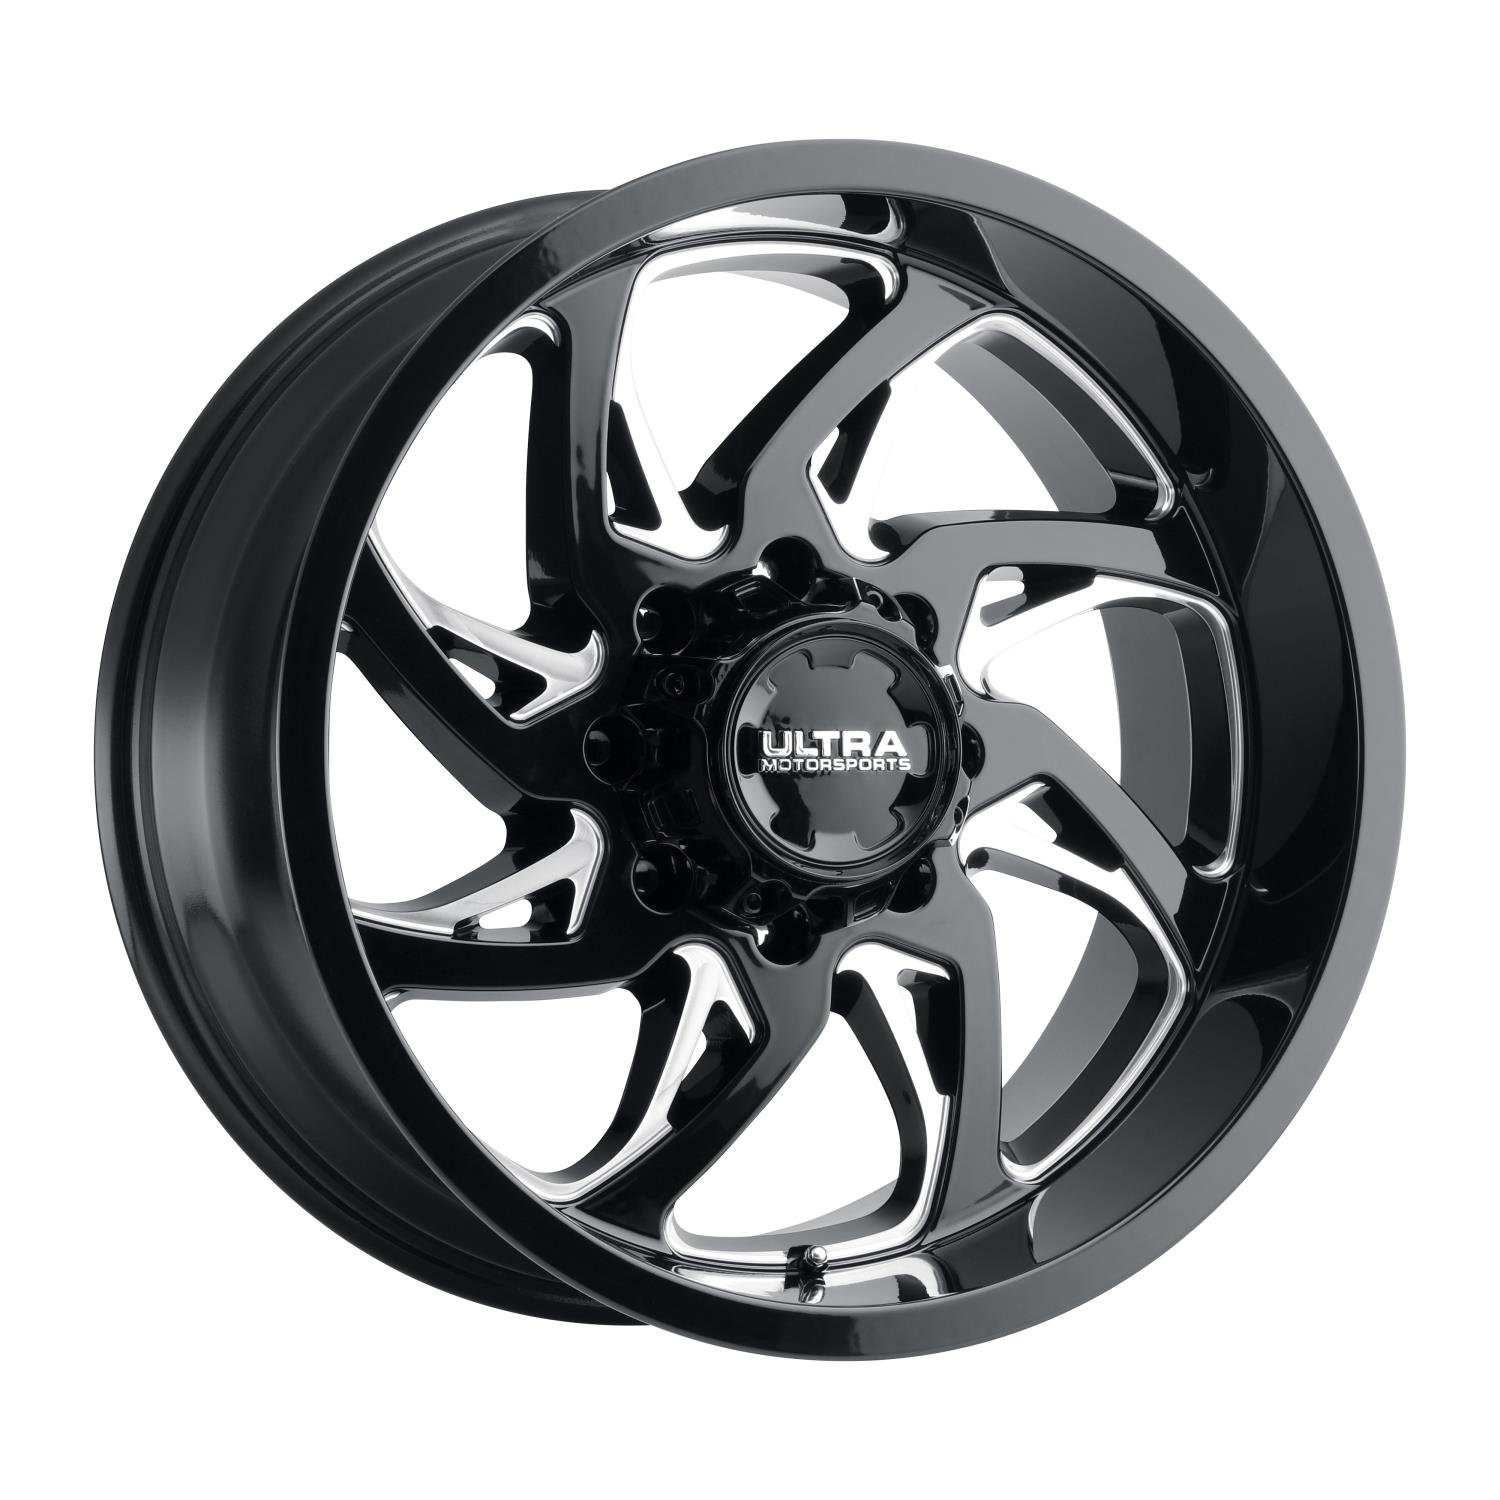 230-Series Villain Wheel, Size: 18x9", Bolt Pattern: 6x5.5"/6x135 mm [Gloss Black w/Milled Accents]